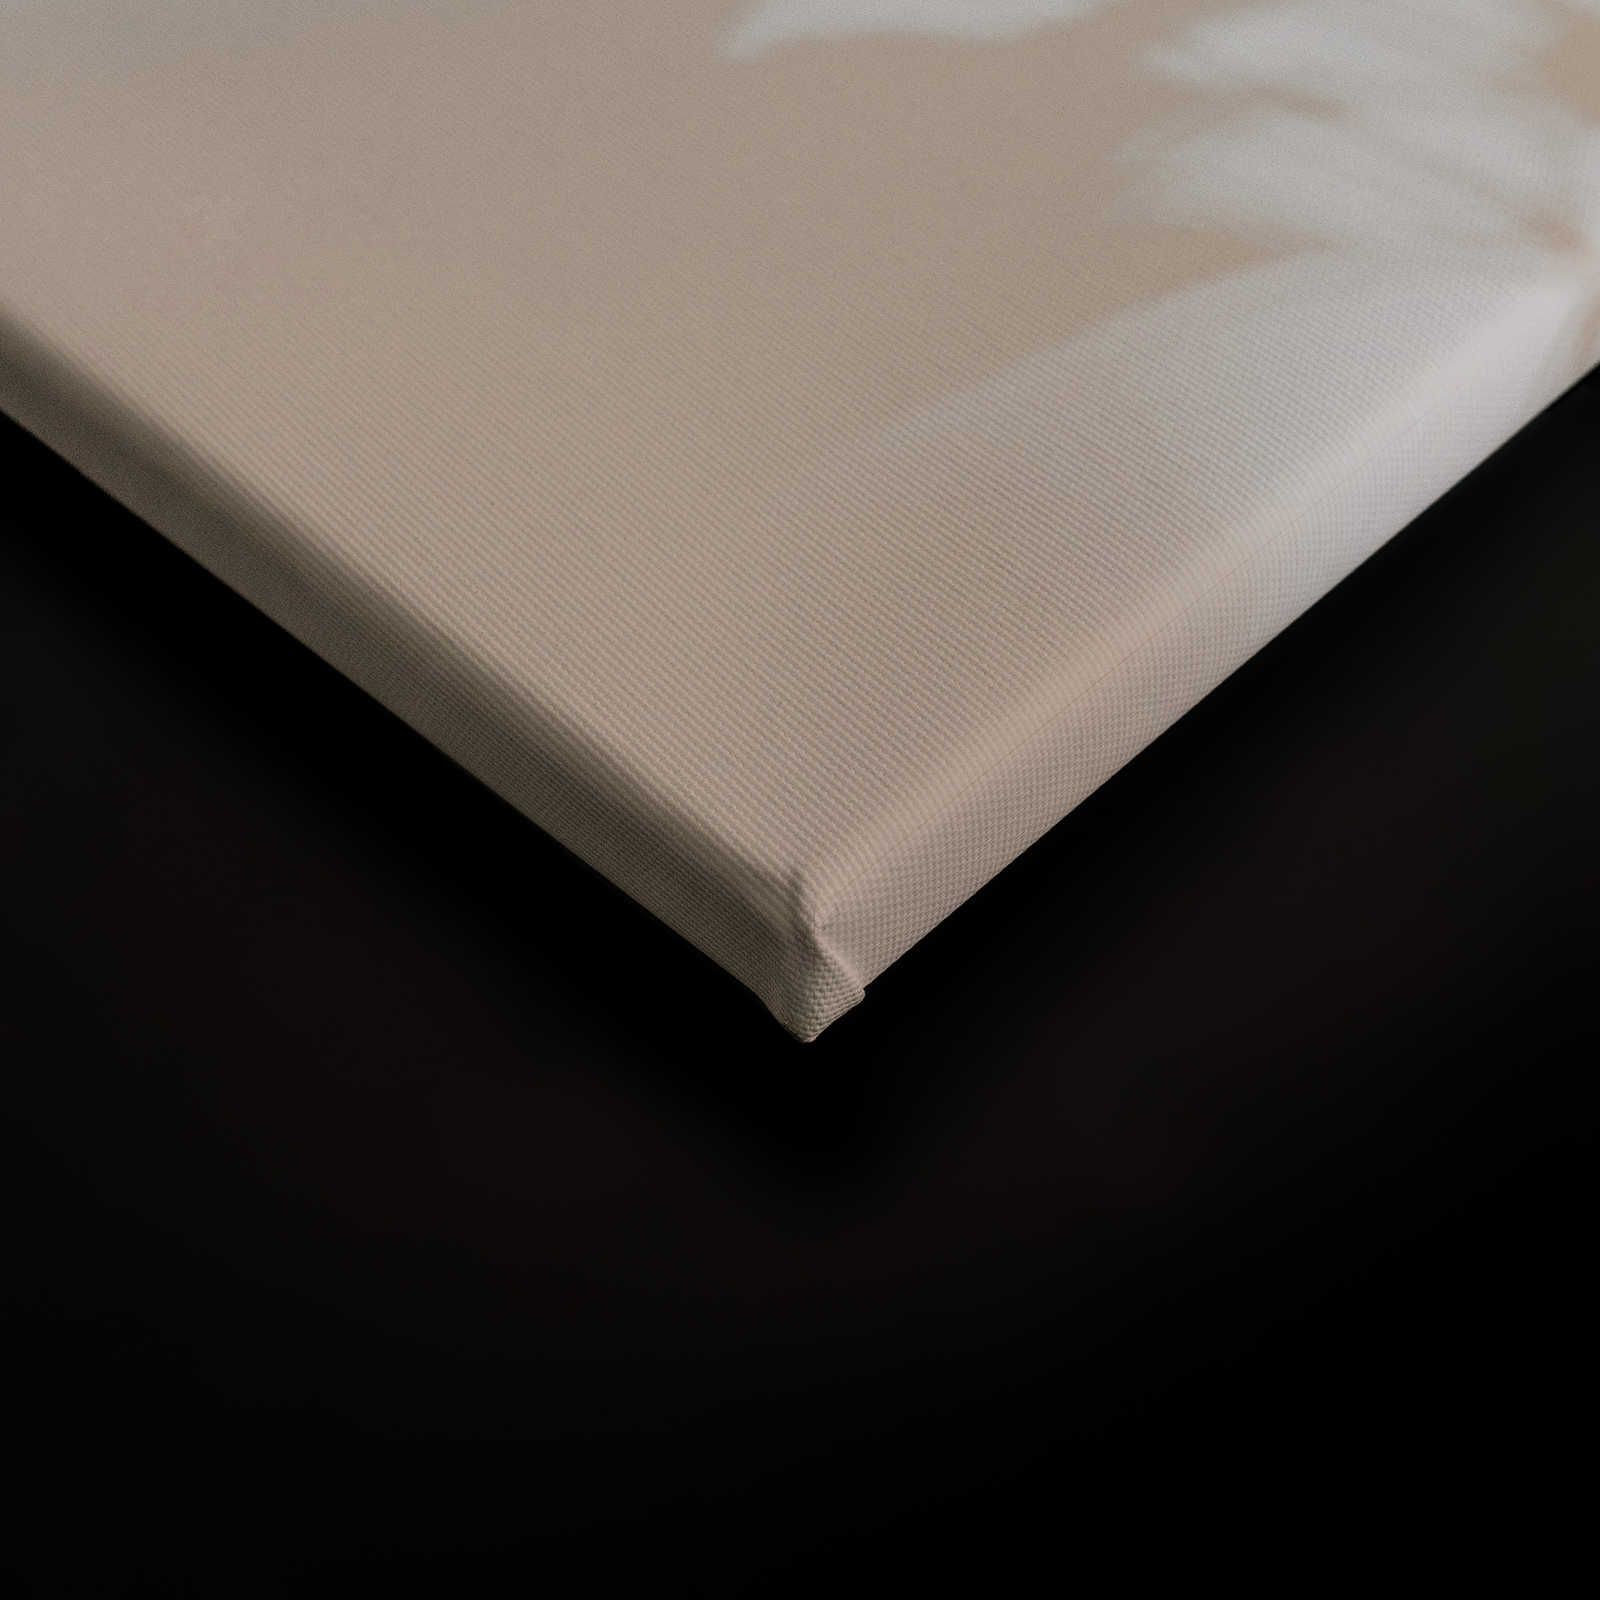             Camera d'ombra 1 - Tela naturale Beige e bianco, disegno sfumato - 0,90 m x 0,60 m
        